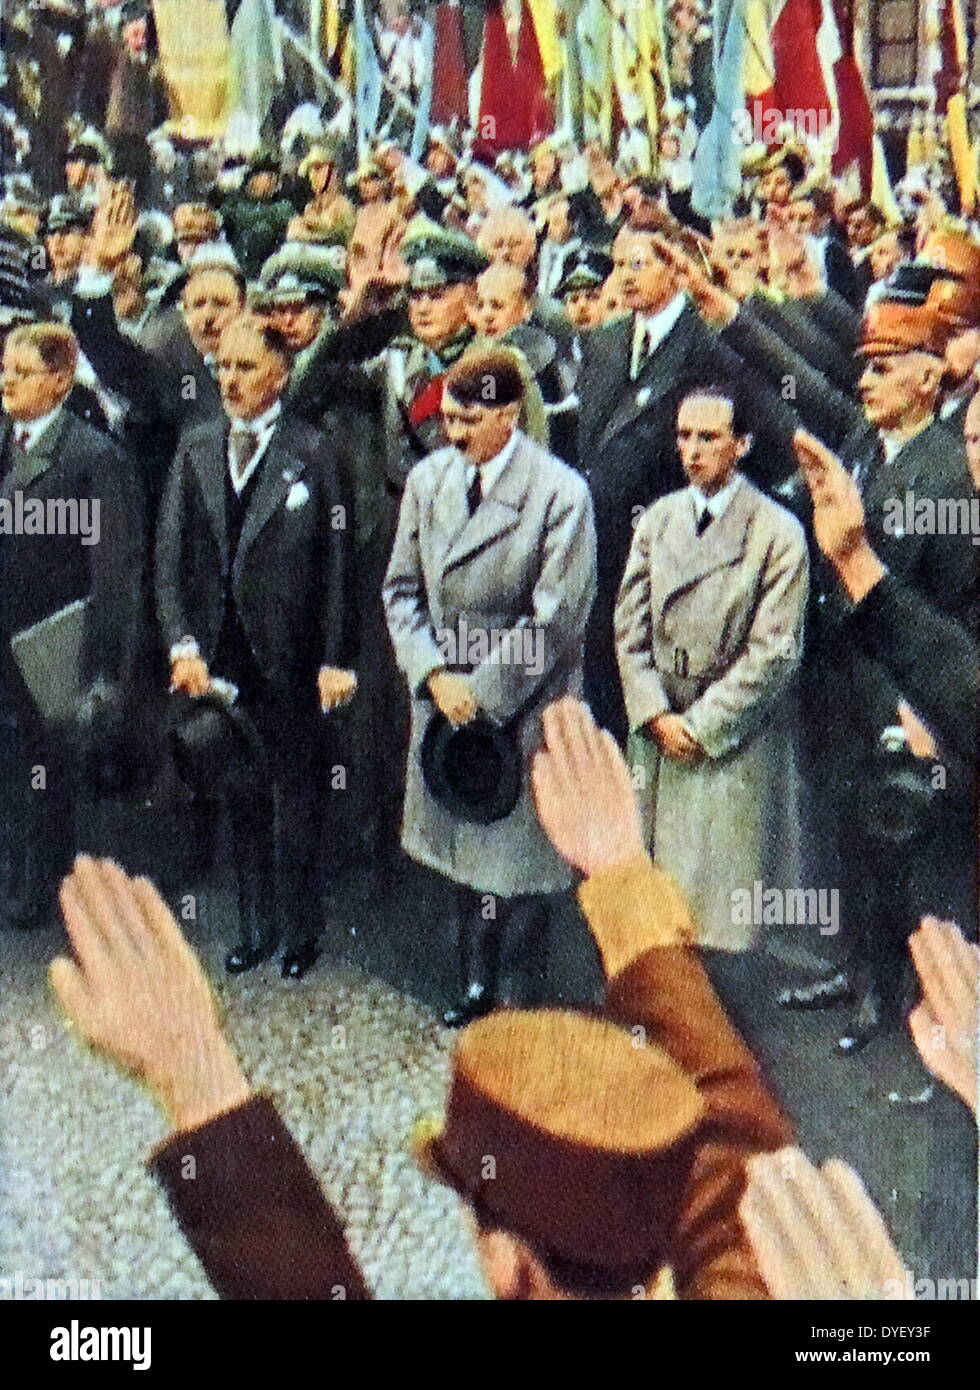 Vice Chancellor Von Papen, Adolf Hitler and Josef Goebbels circa 1933 Stock Photo